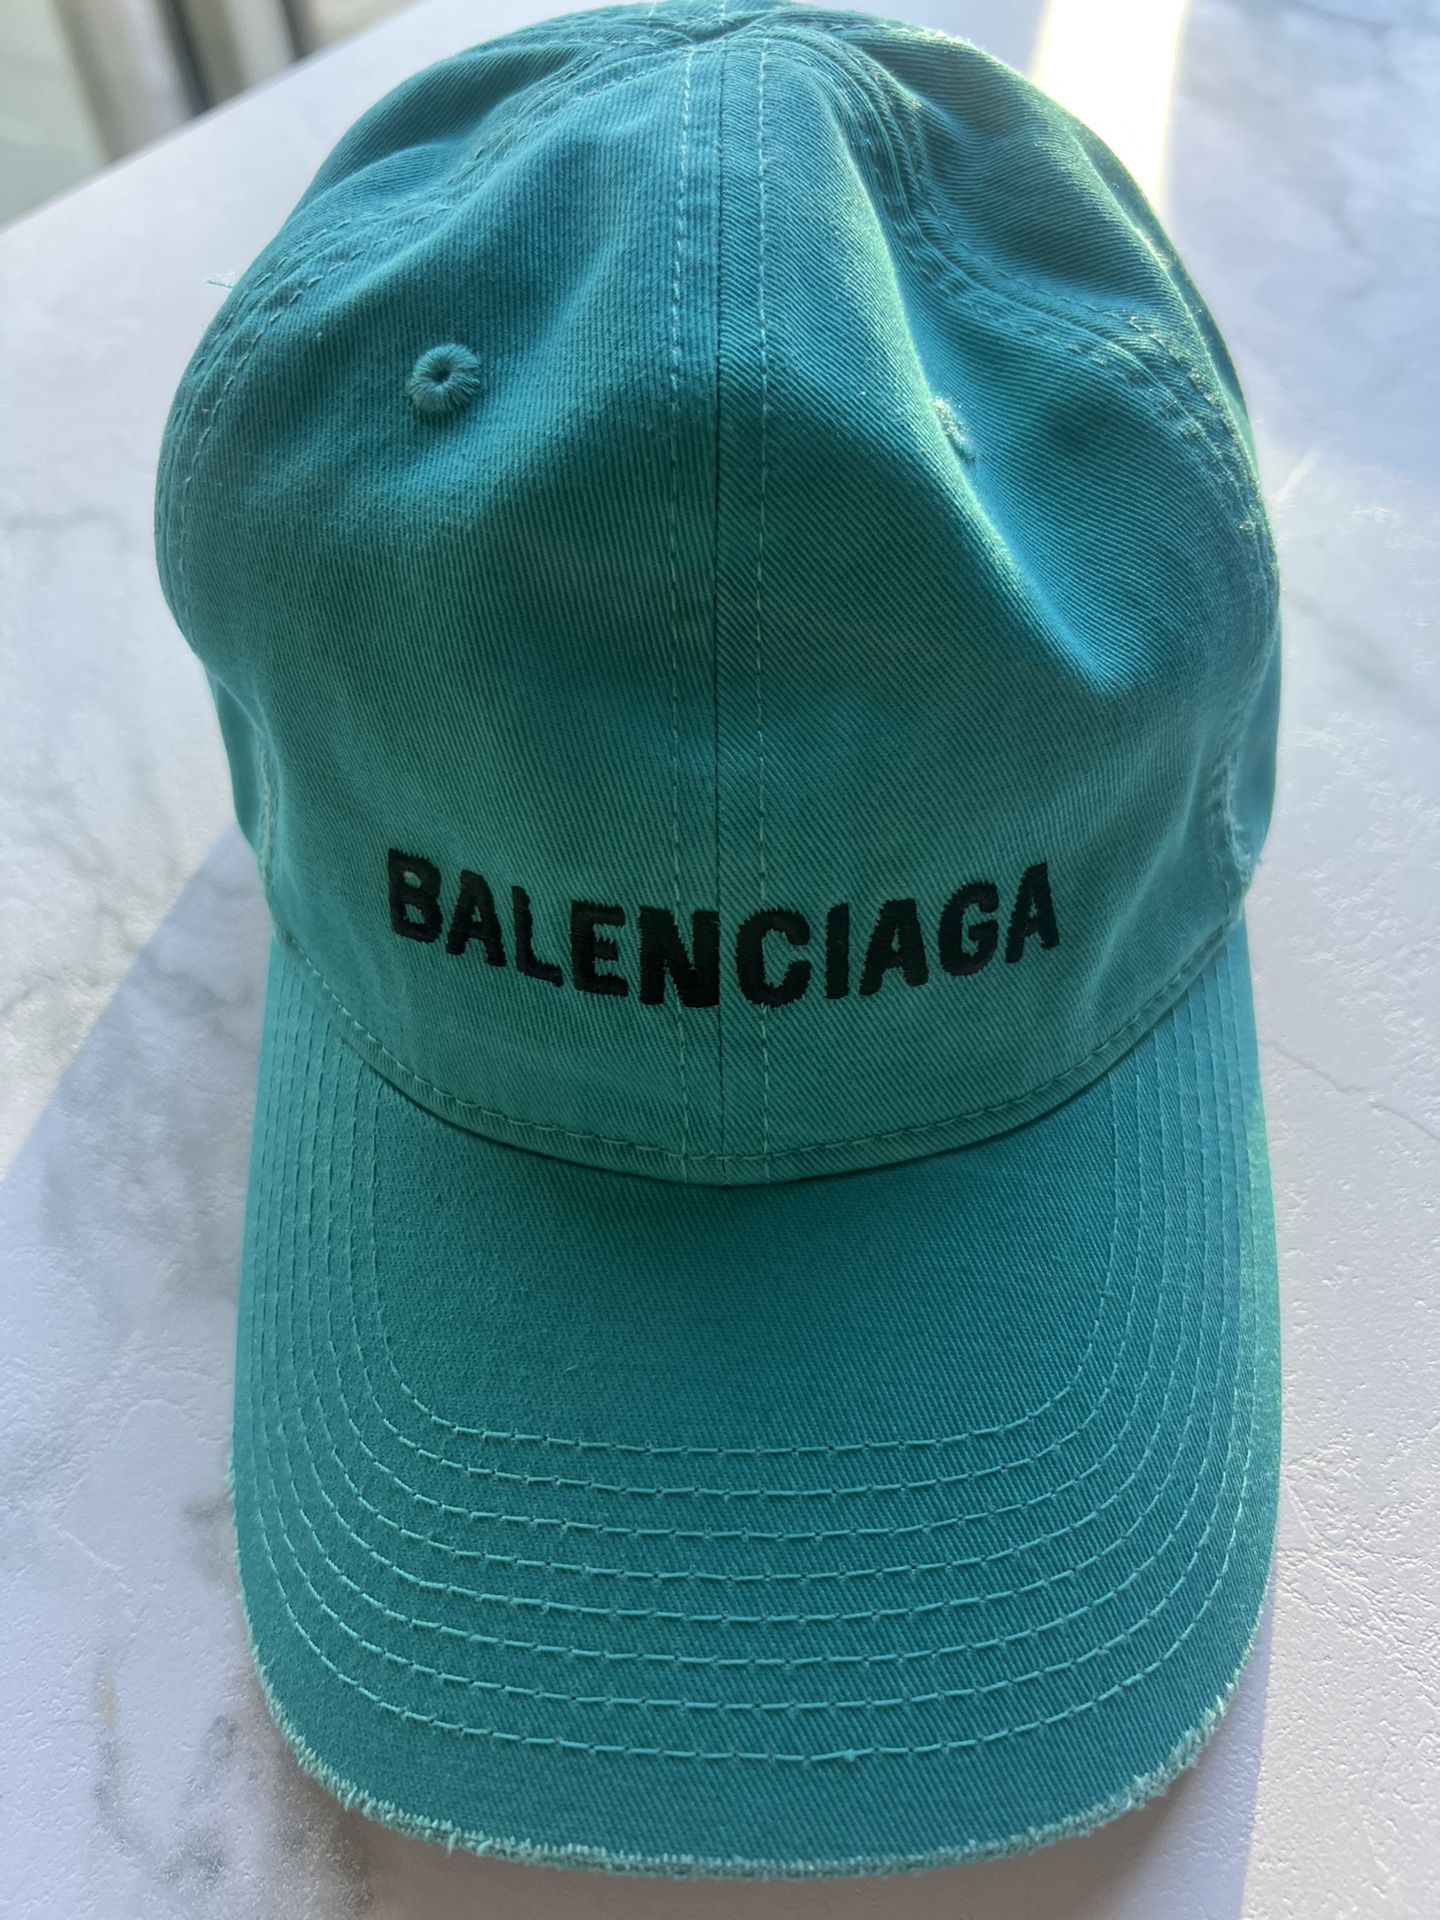 Balenciaga Hat Cap Velcro